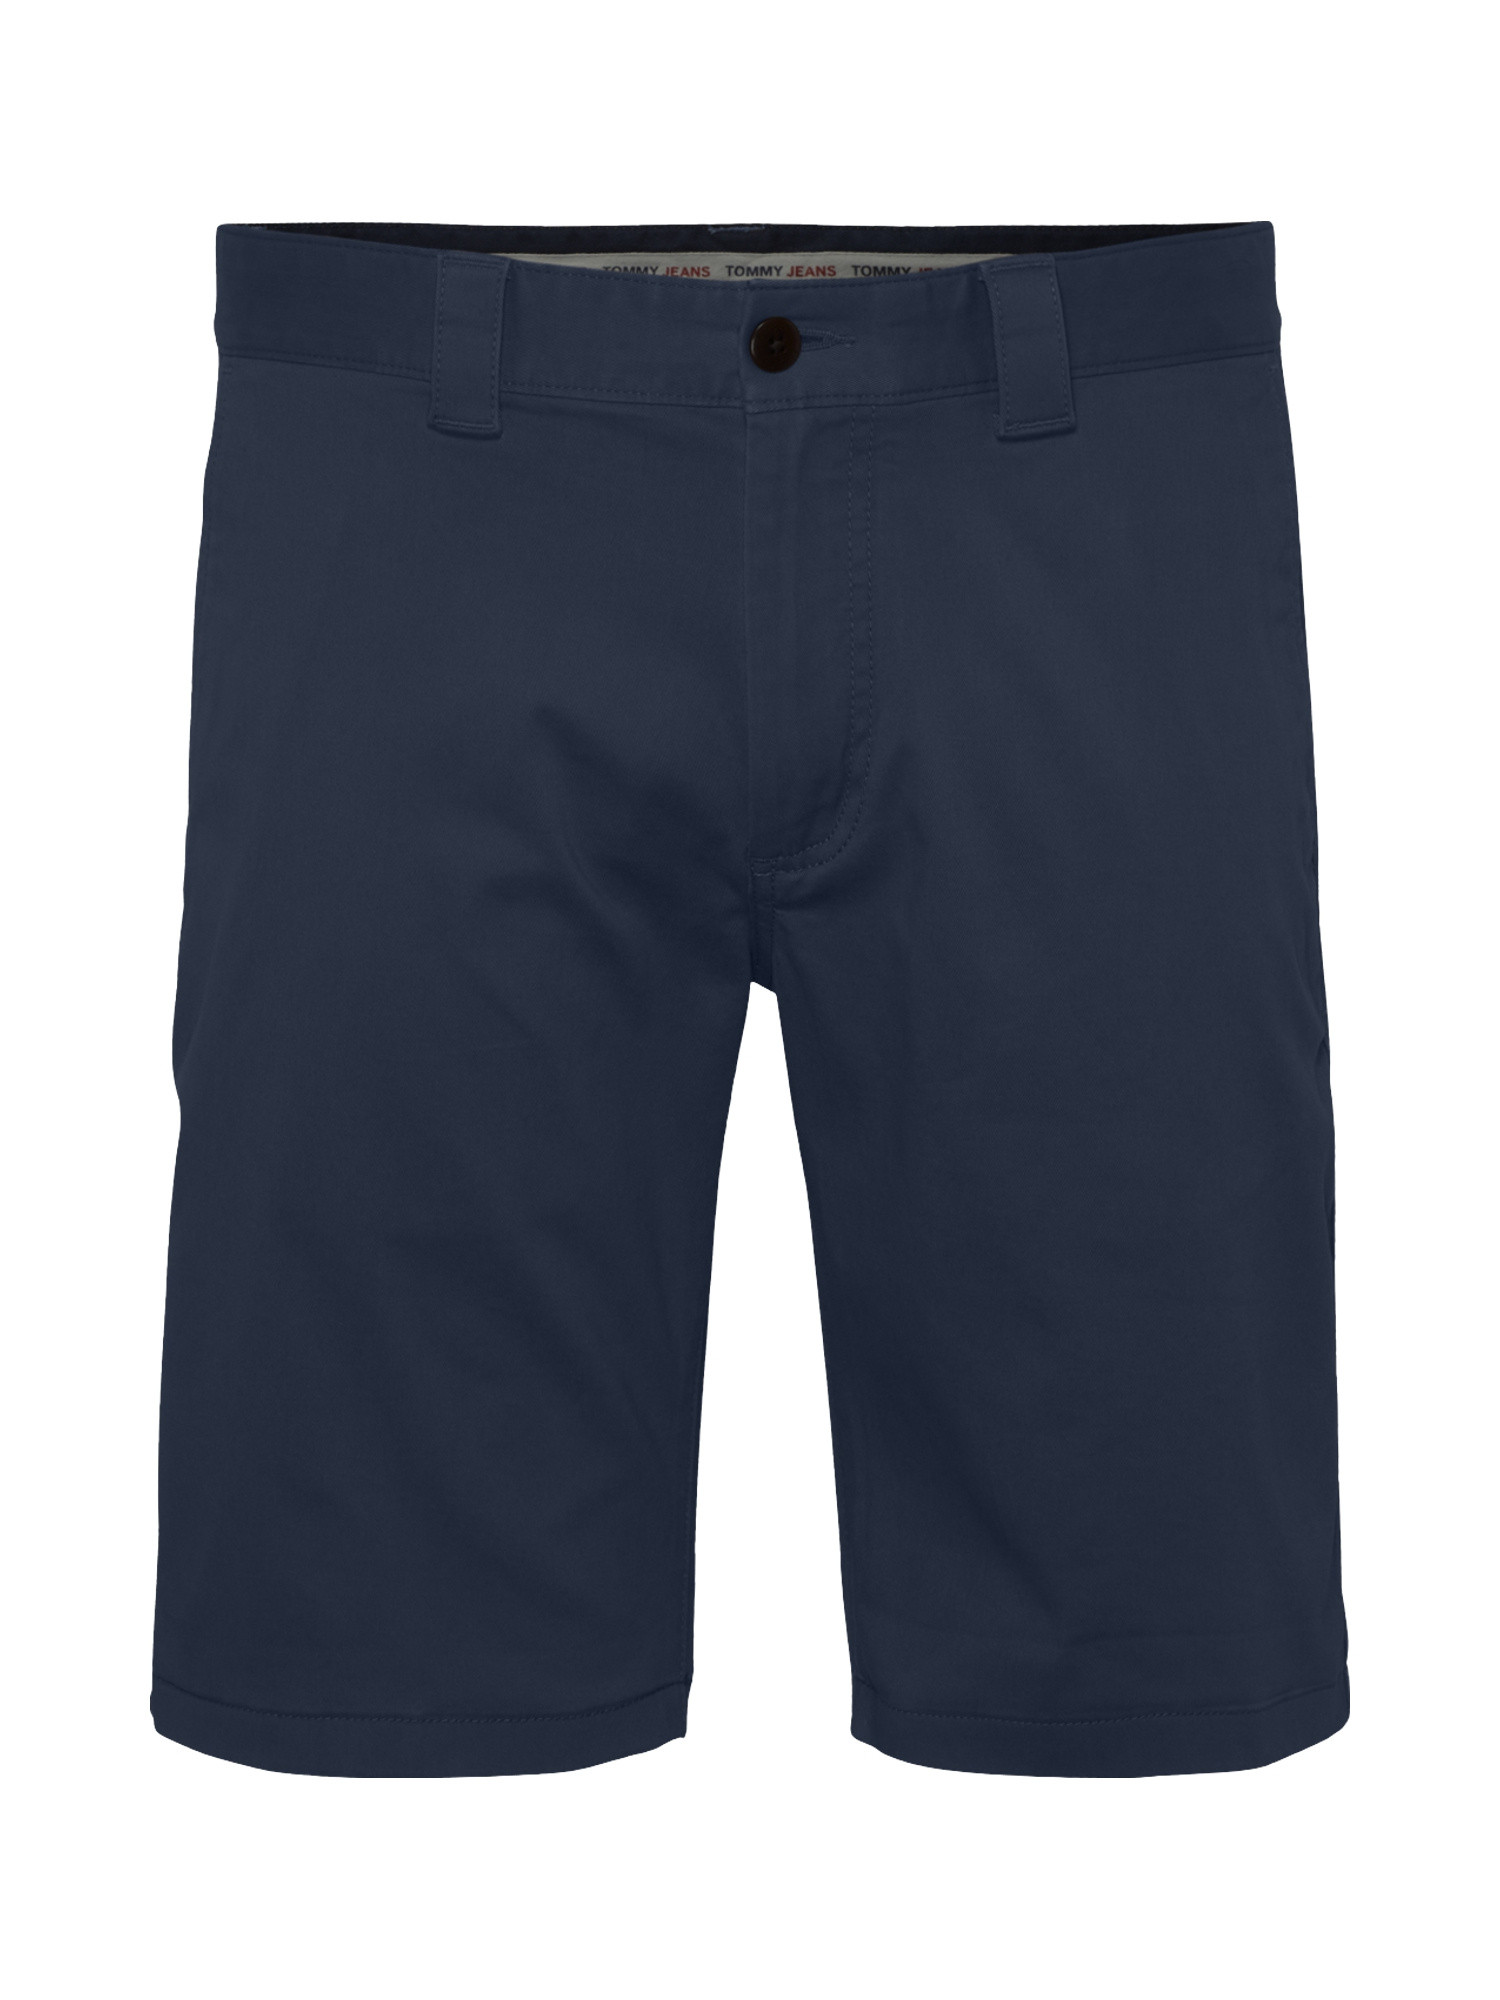 Chino shorts, Blu, large image number 0